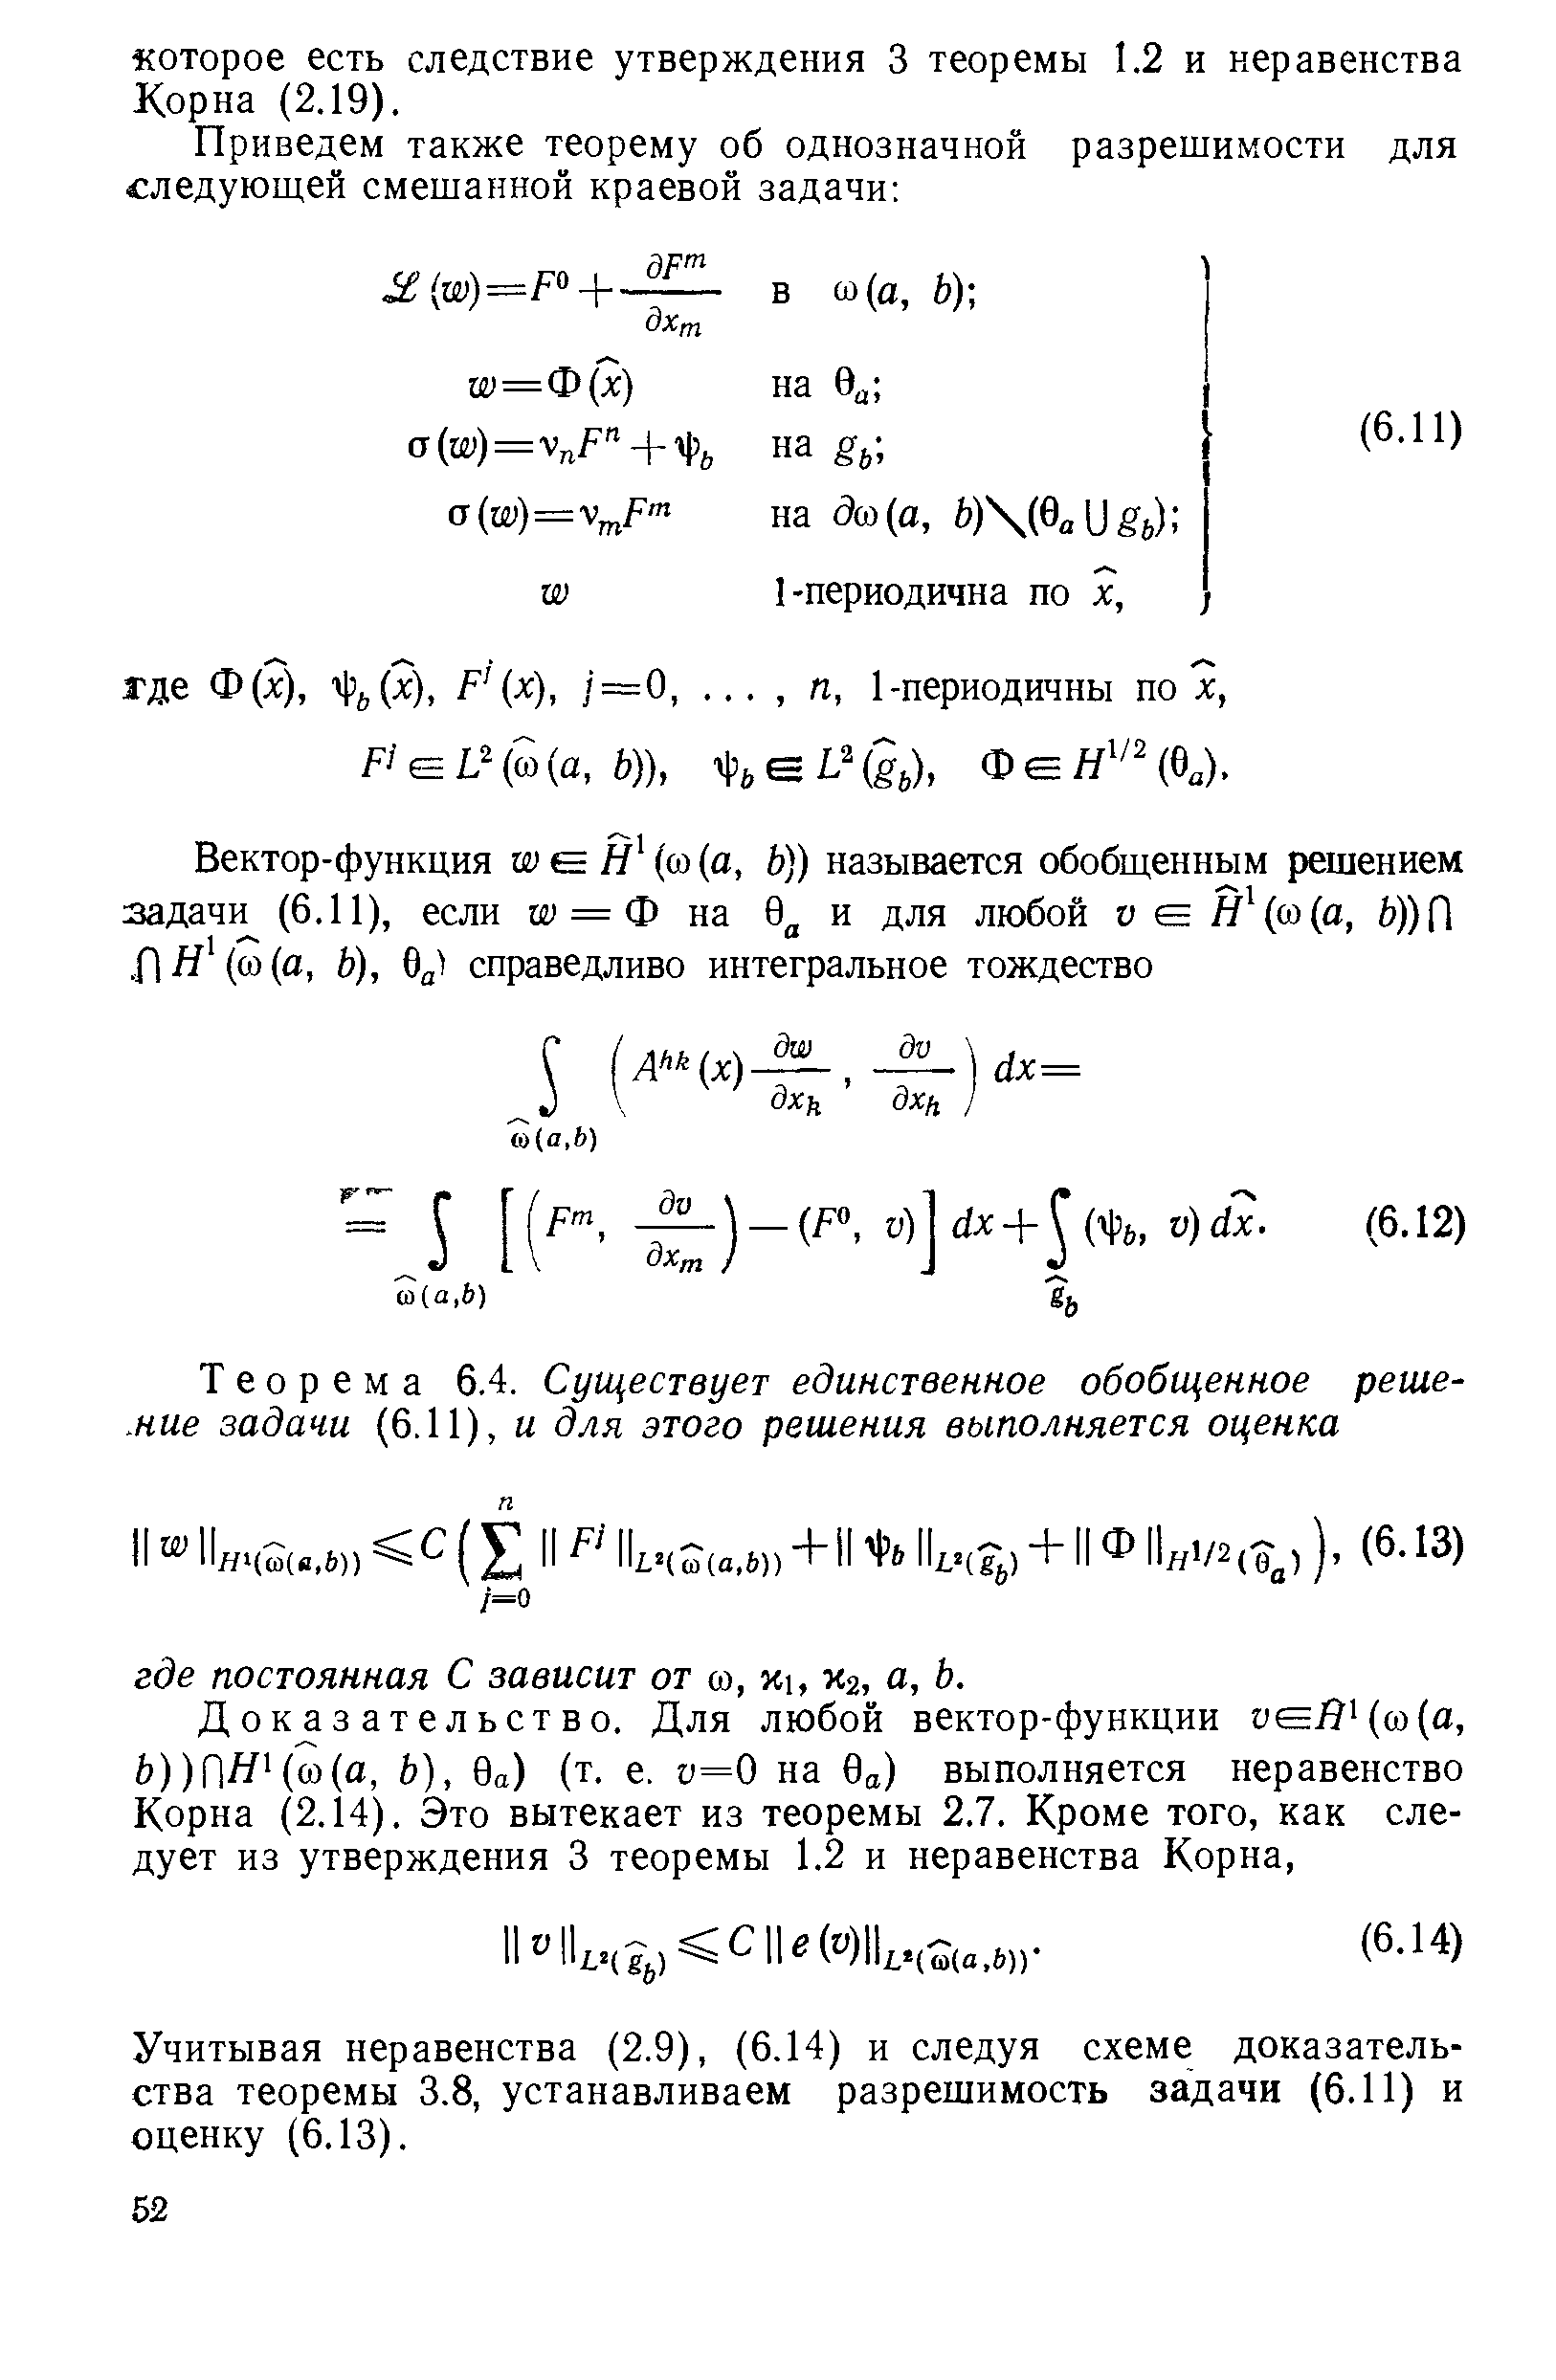 Учитывая неравенства (2.9), (6.14) и следуя схеме доказательства теоремы 3.8, устанавливаем разрешимость задачи (6.11) и оценку (6.13).
